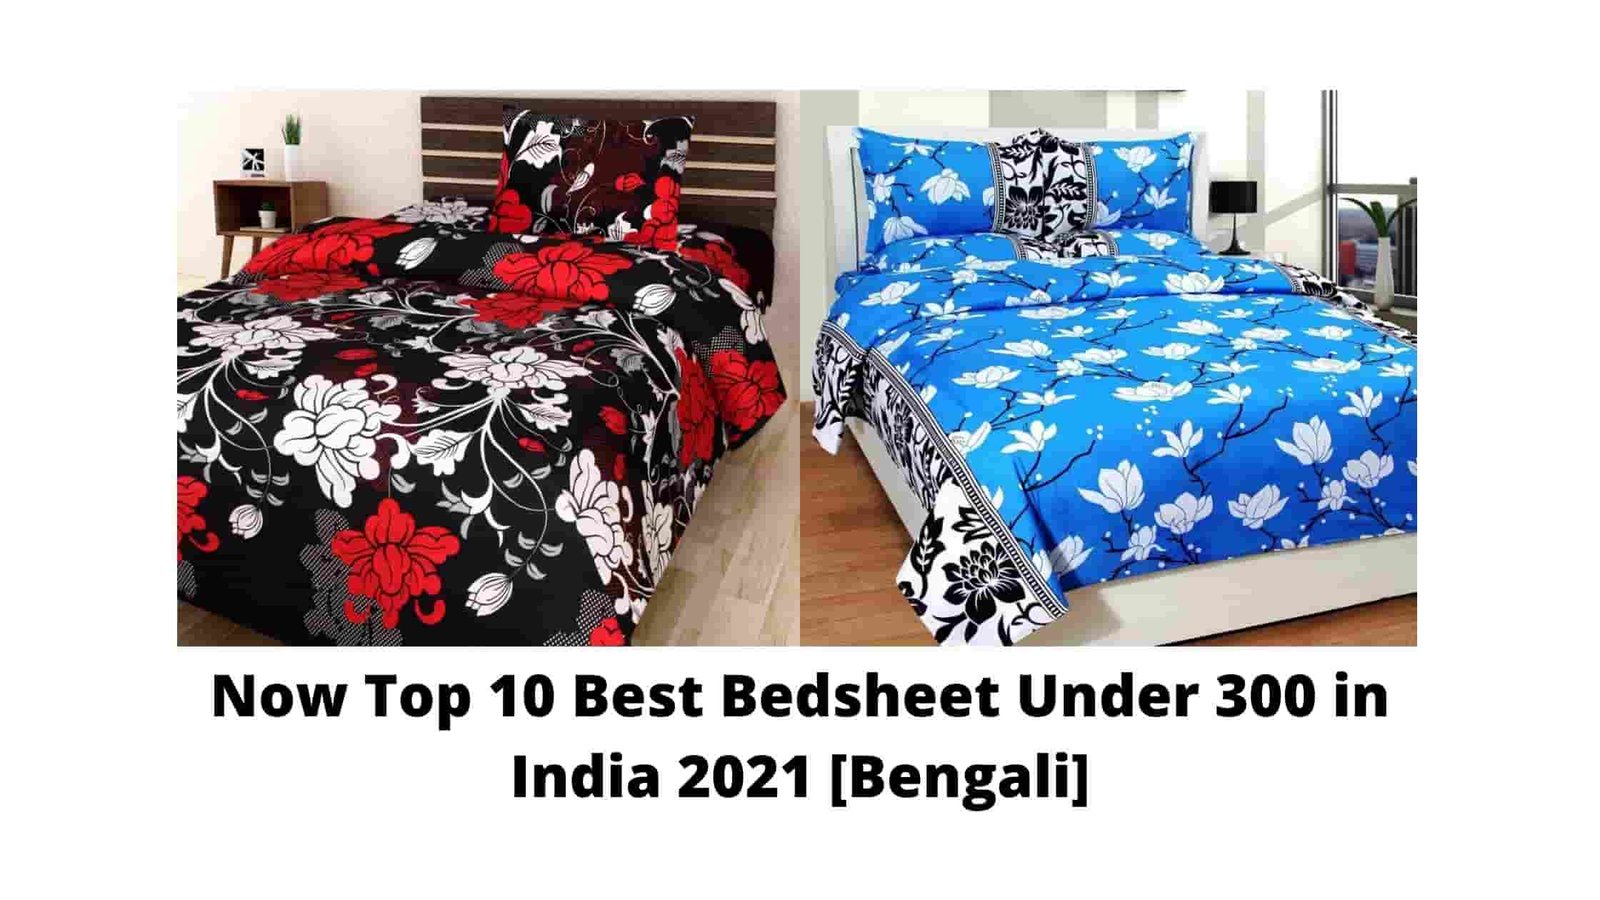 Now Top 10 Best Bedsheet Under 300 in India 2021 [Bengali]